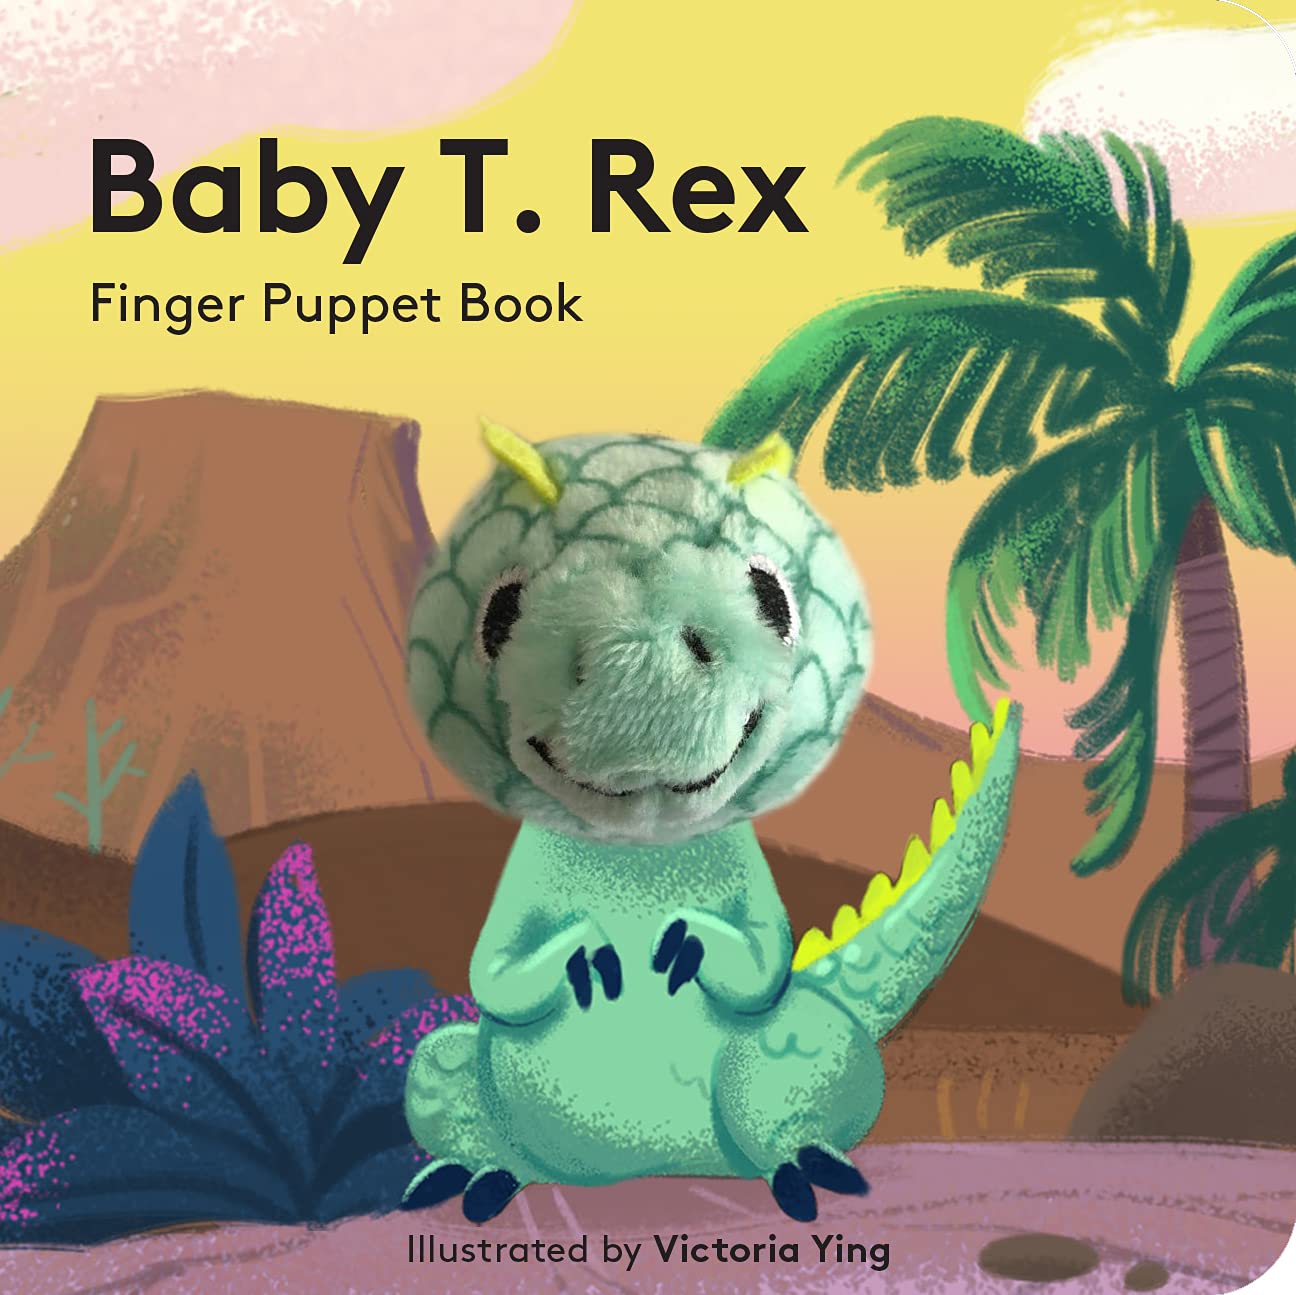 "Baby T. Rex" Finger Puppet Book